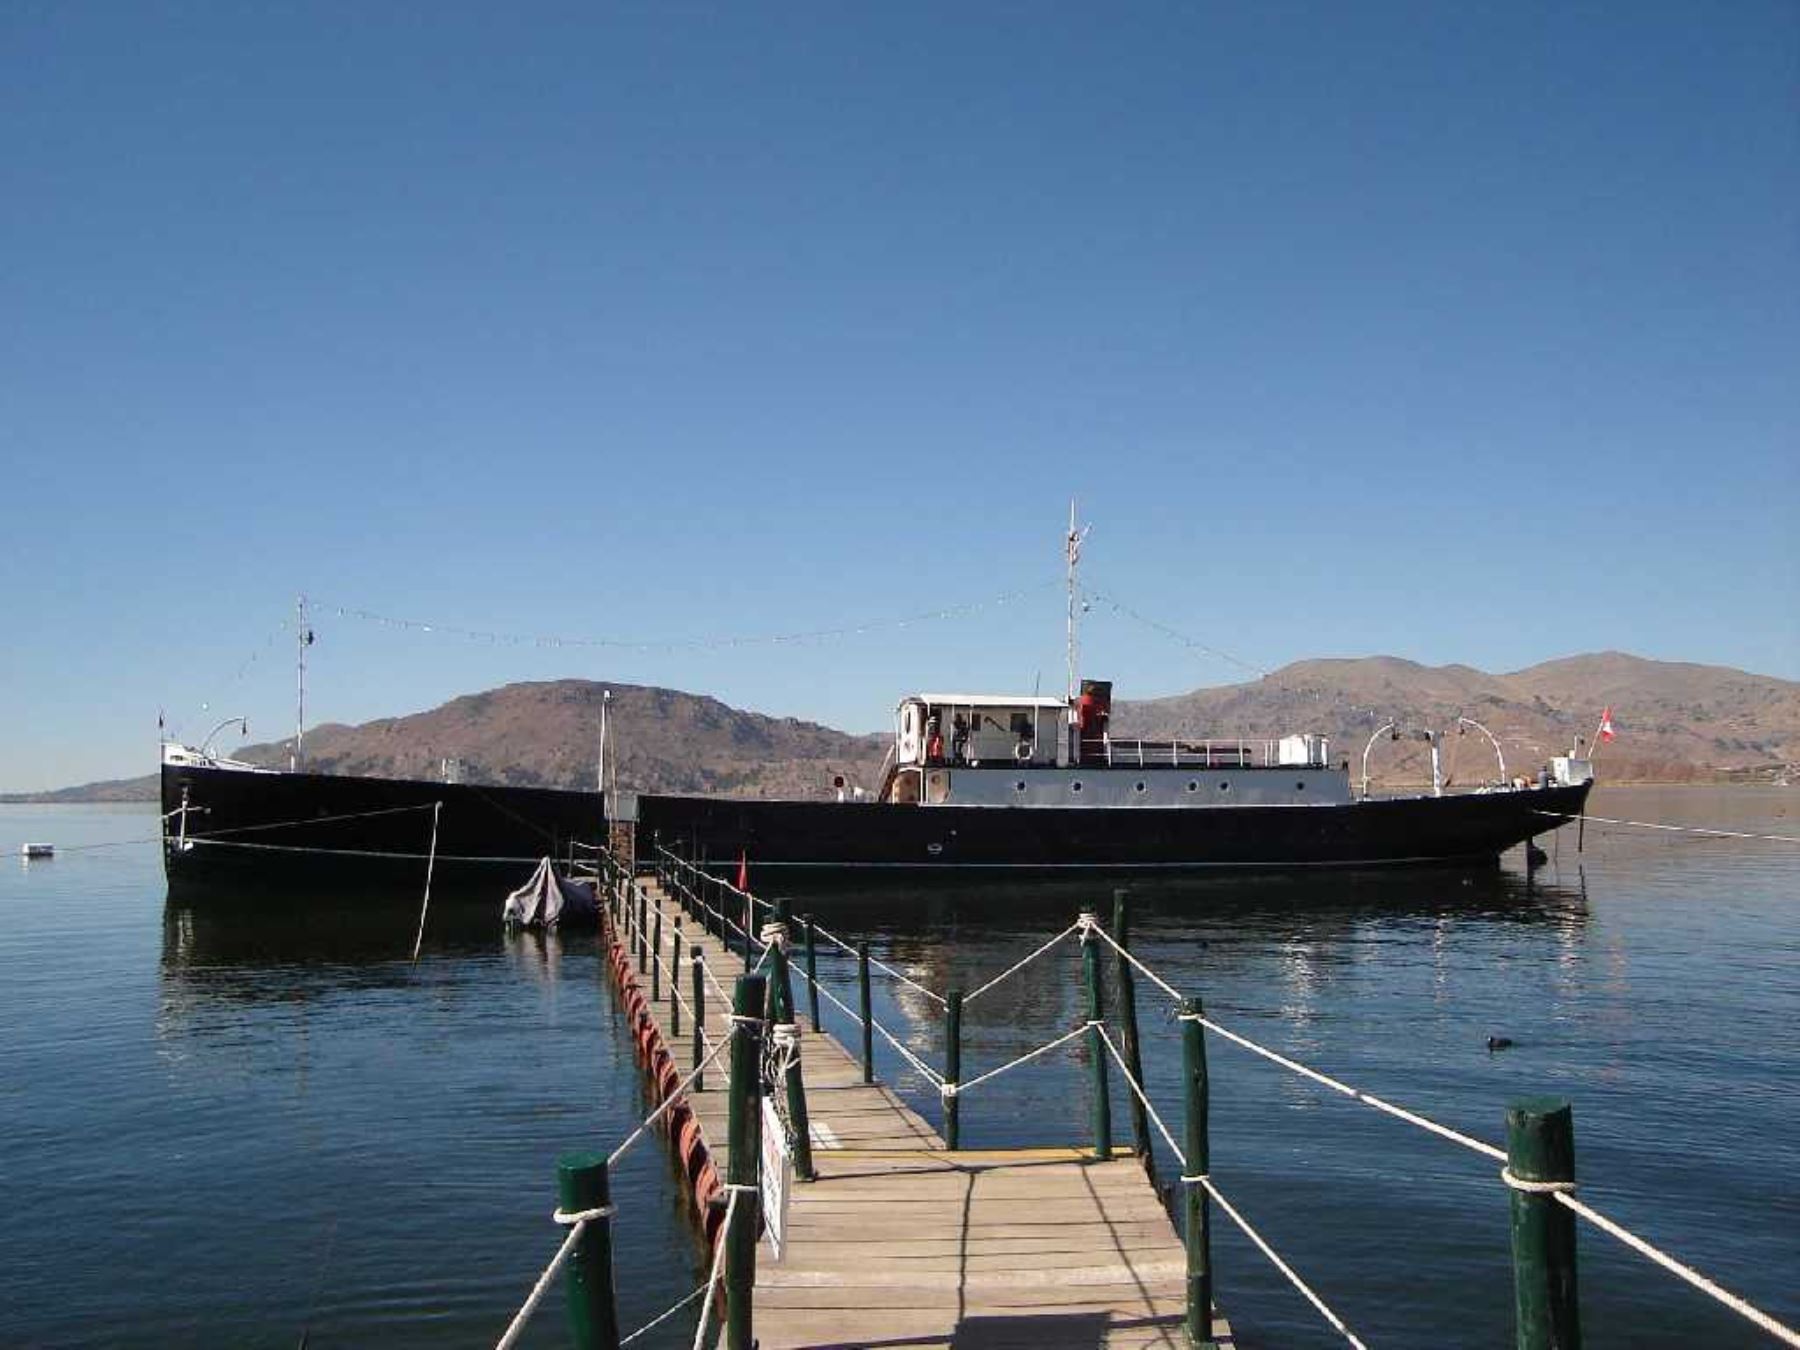 El Yavarí es un barco con una historia digna de contar. Construido en Inglaterra en
1861, fue transportado en piezas y cargado por mulas desde el puerto de Arica hasta
Puno, para luego ser reconstruido. Hoy es un museo que merece ser visitado.